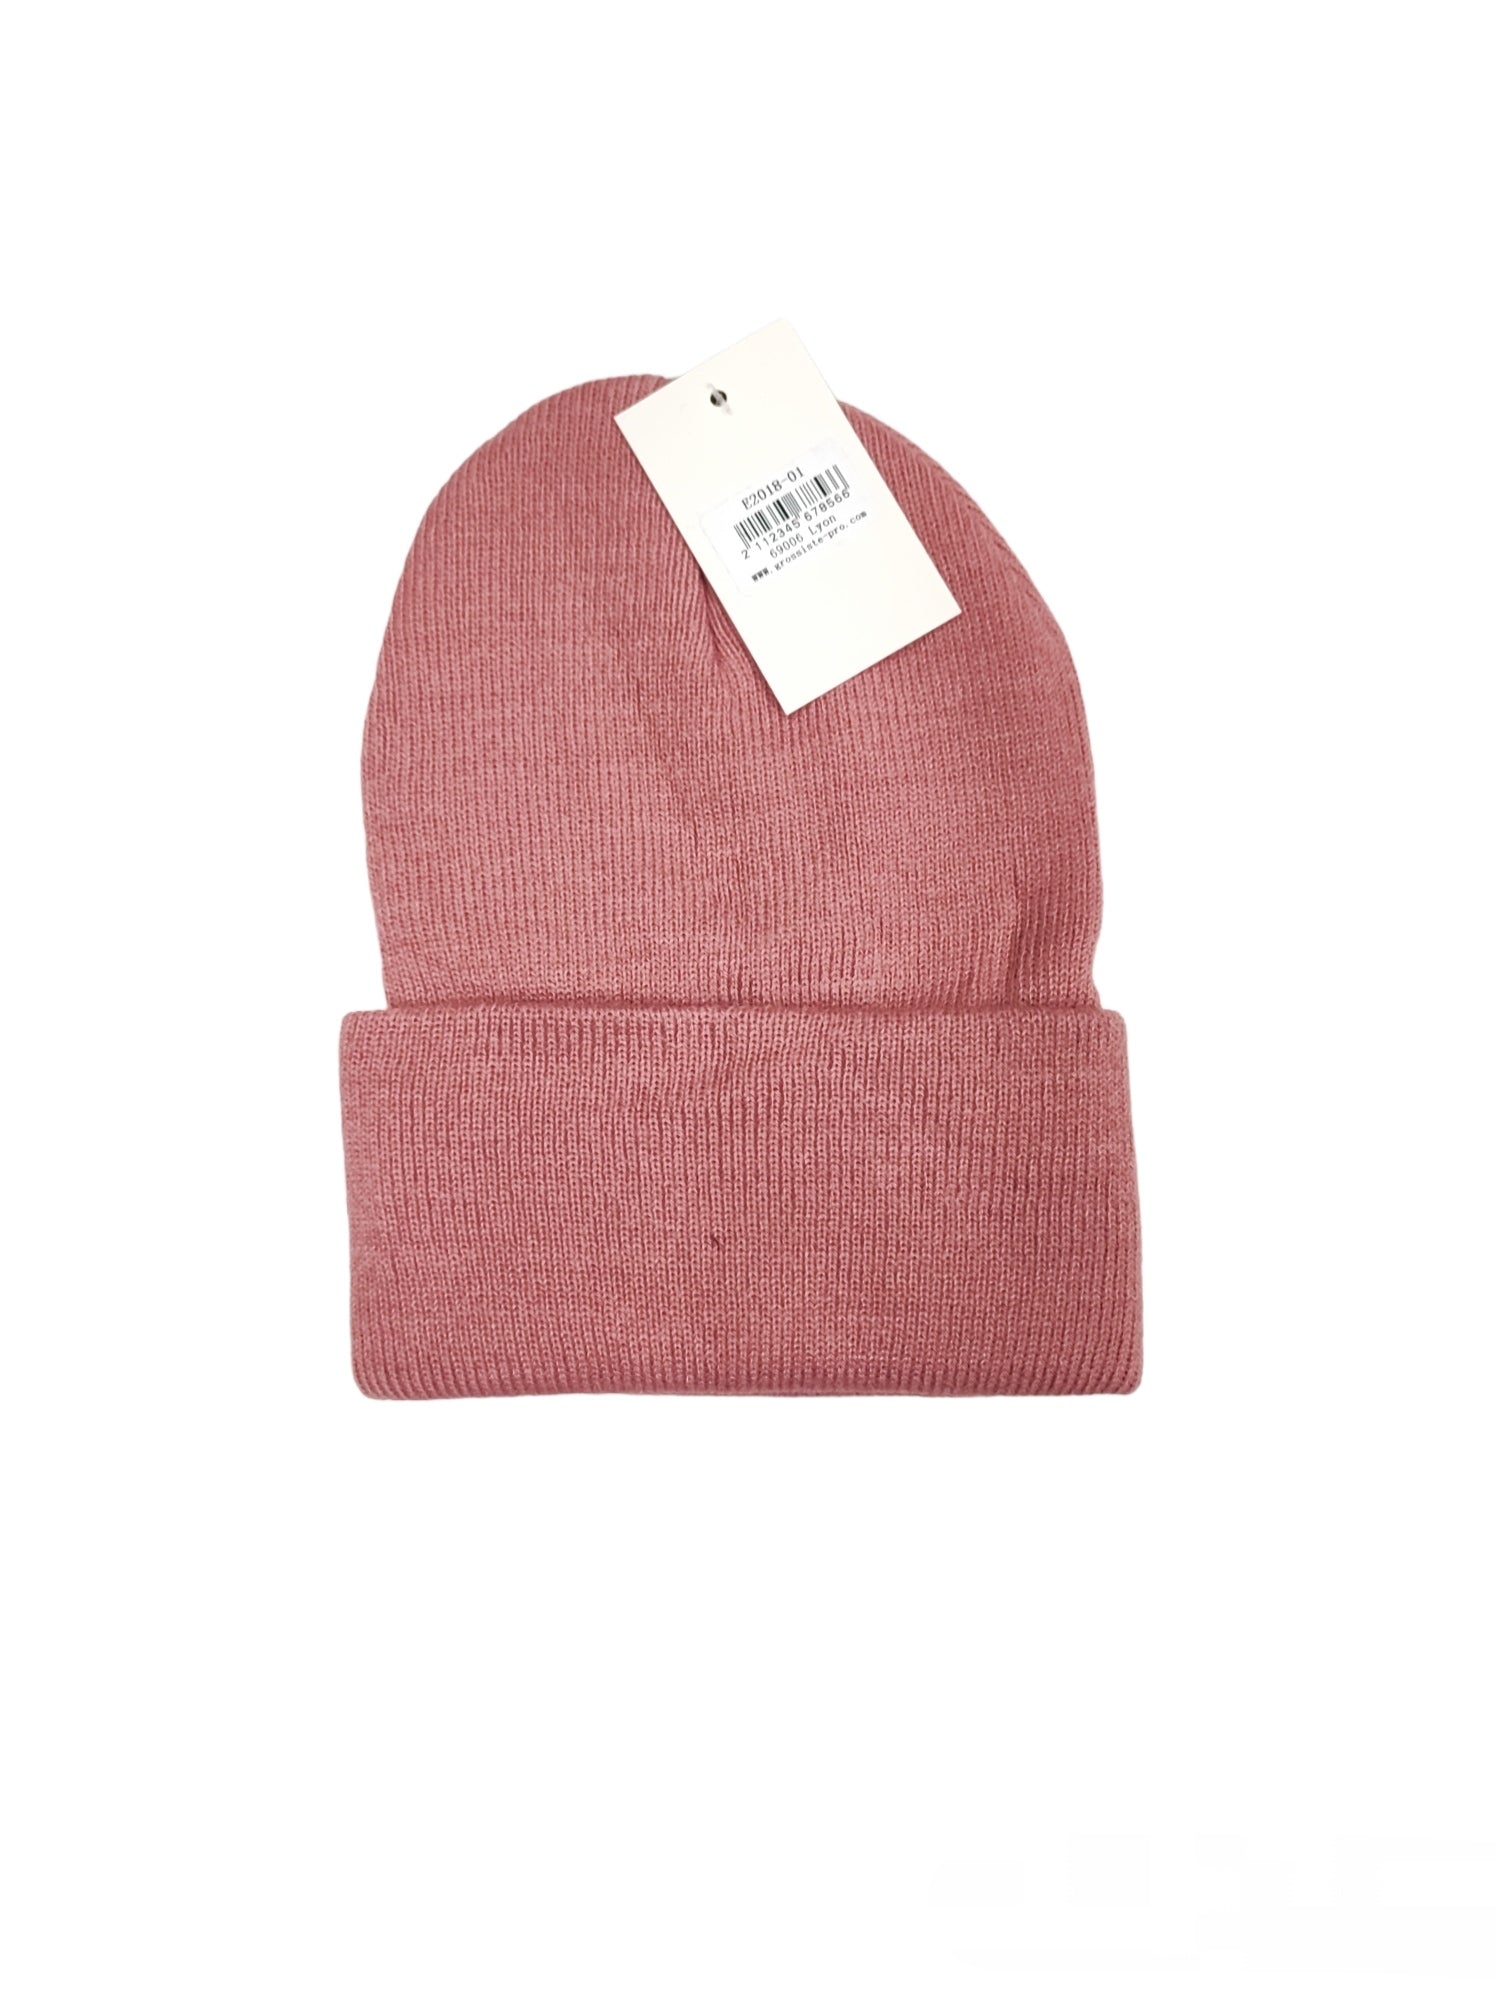 Bonnet tricot simple enfants (x12)